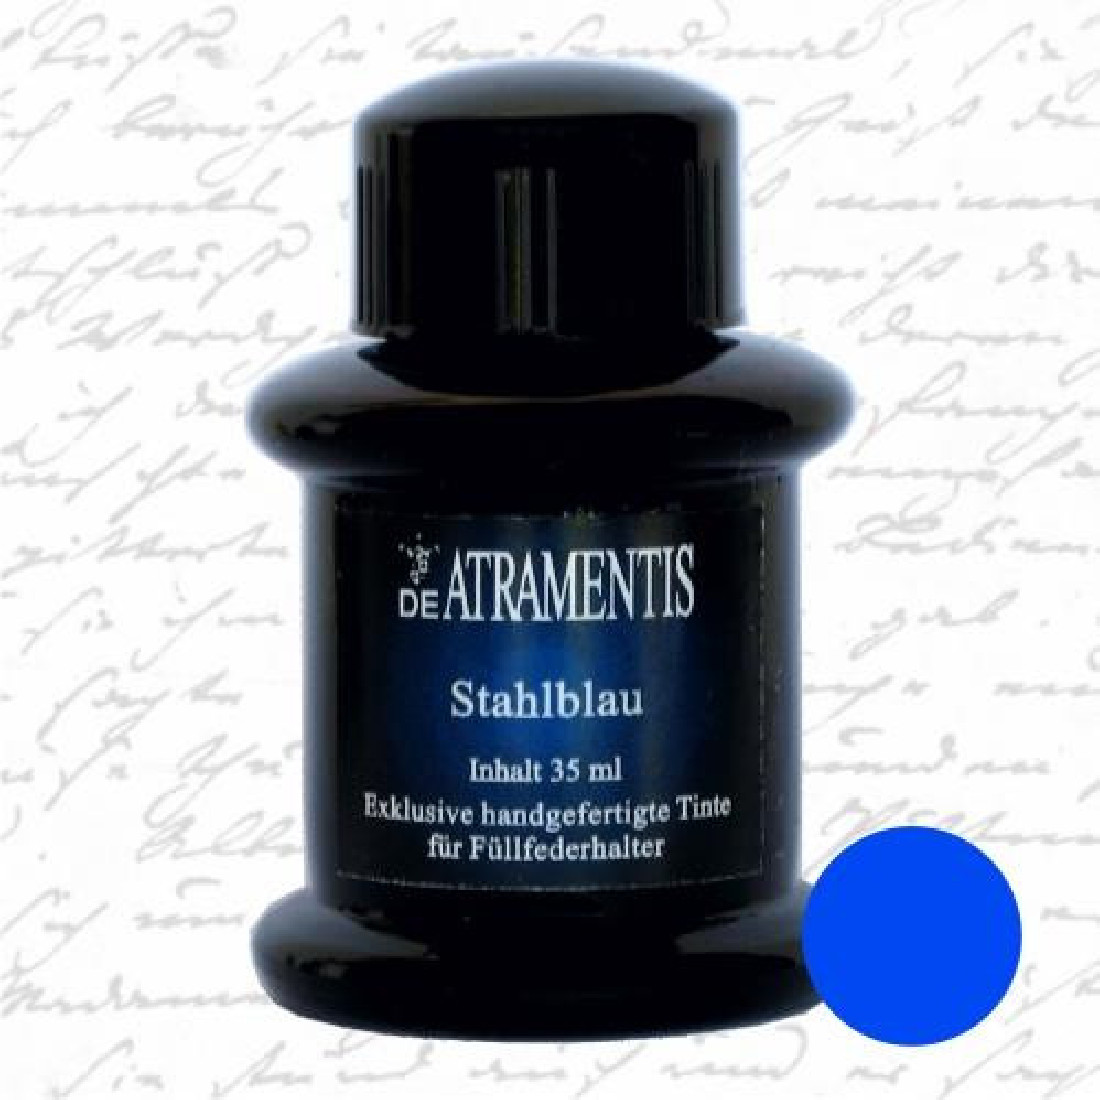 De Atramentis steel blue 45ml fountain pen standard ink